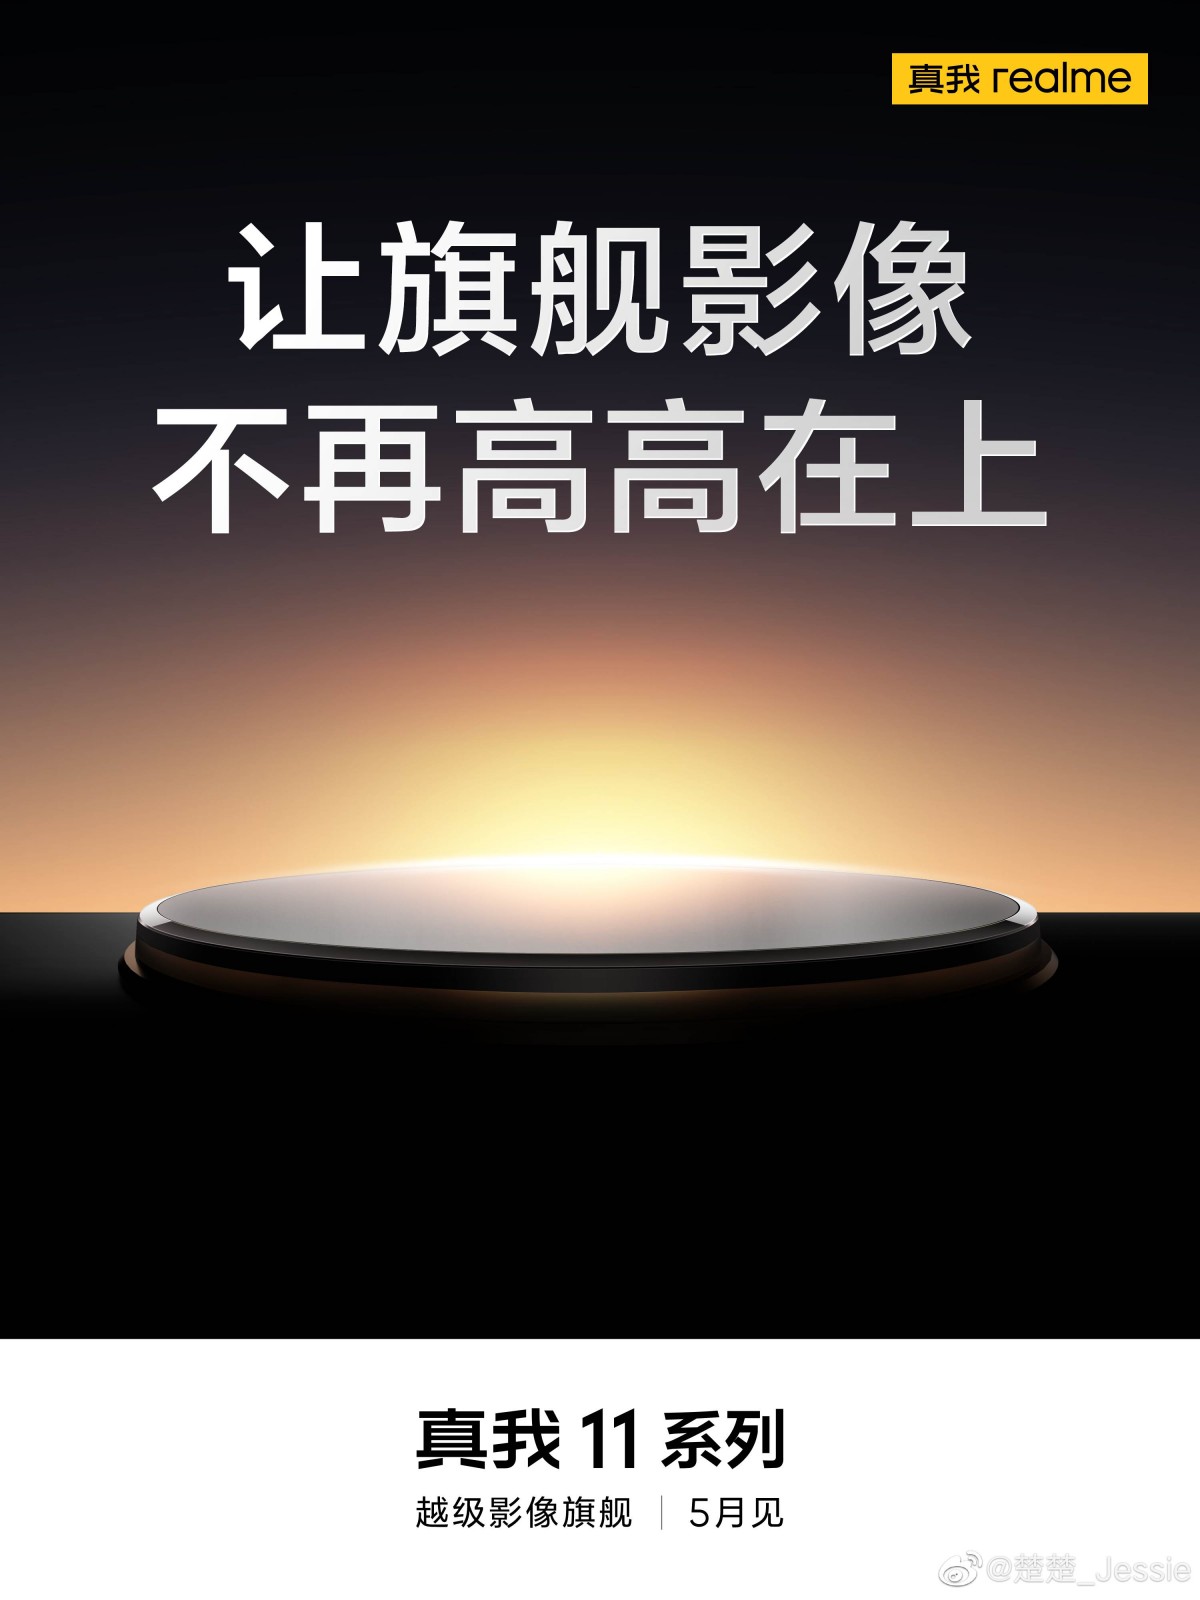 Imagem mostra banner em mandarim divulgado pela realme, mostrando parte do realme 11 Series